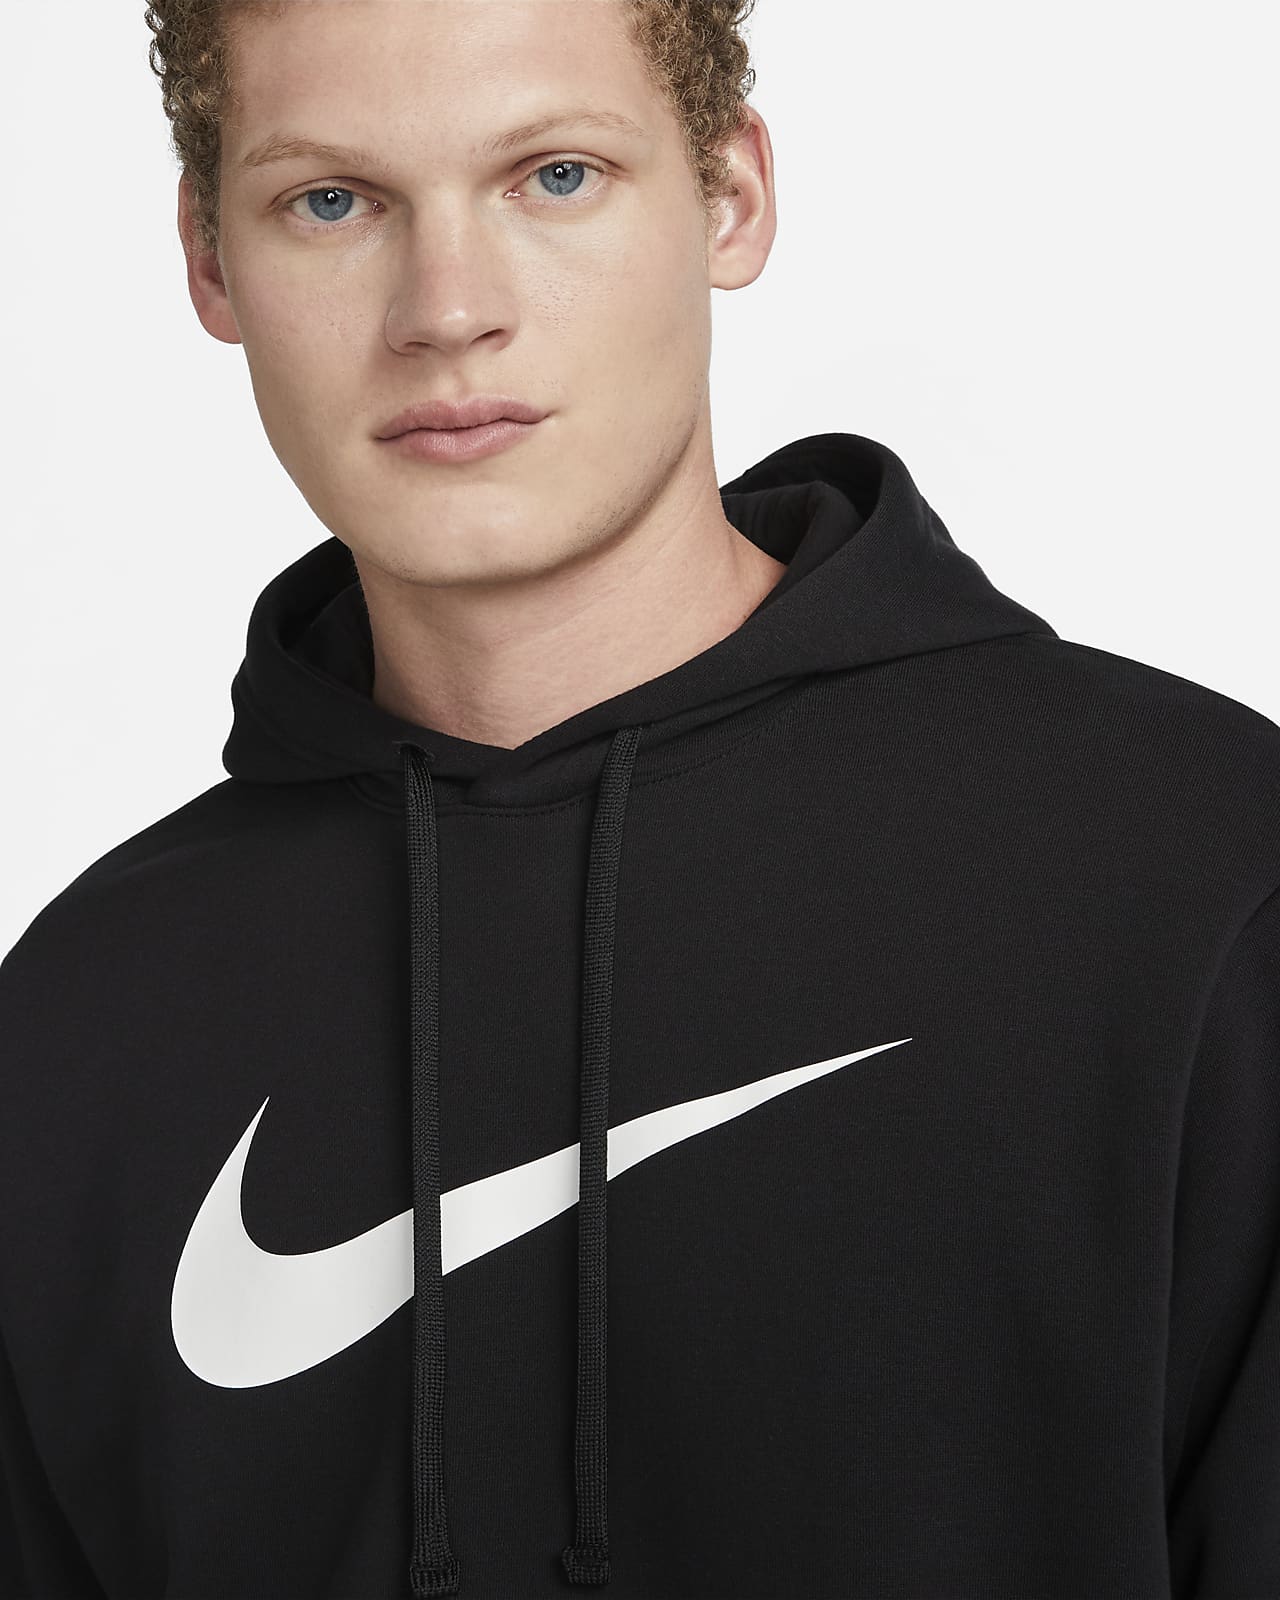 Nike Sportswear Repeat Men's Pullover Fleece Hoodie. Nike ZA